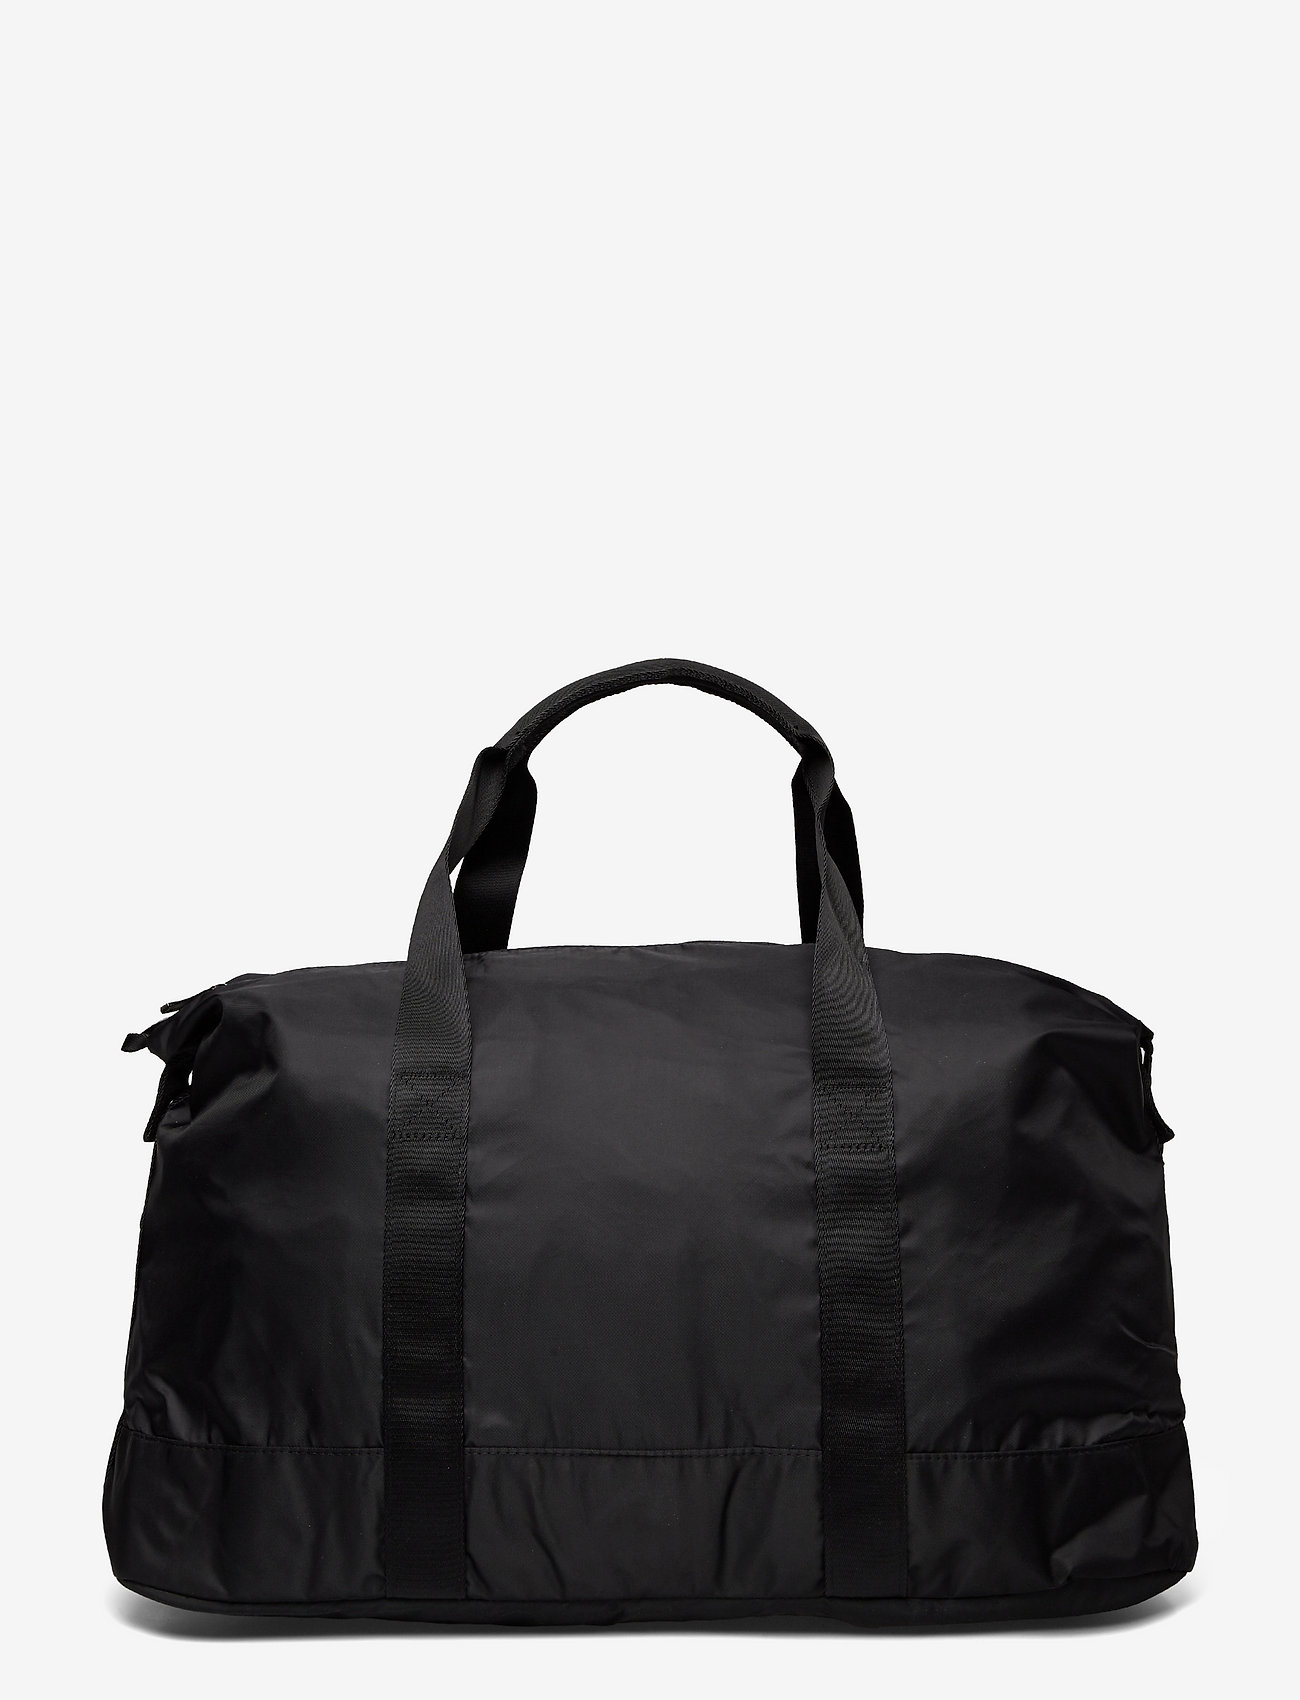 Casall - Traning bag - black - 1